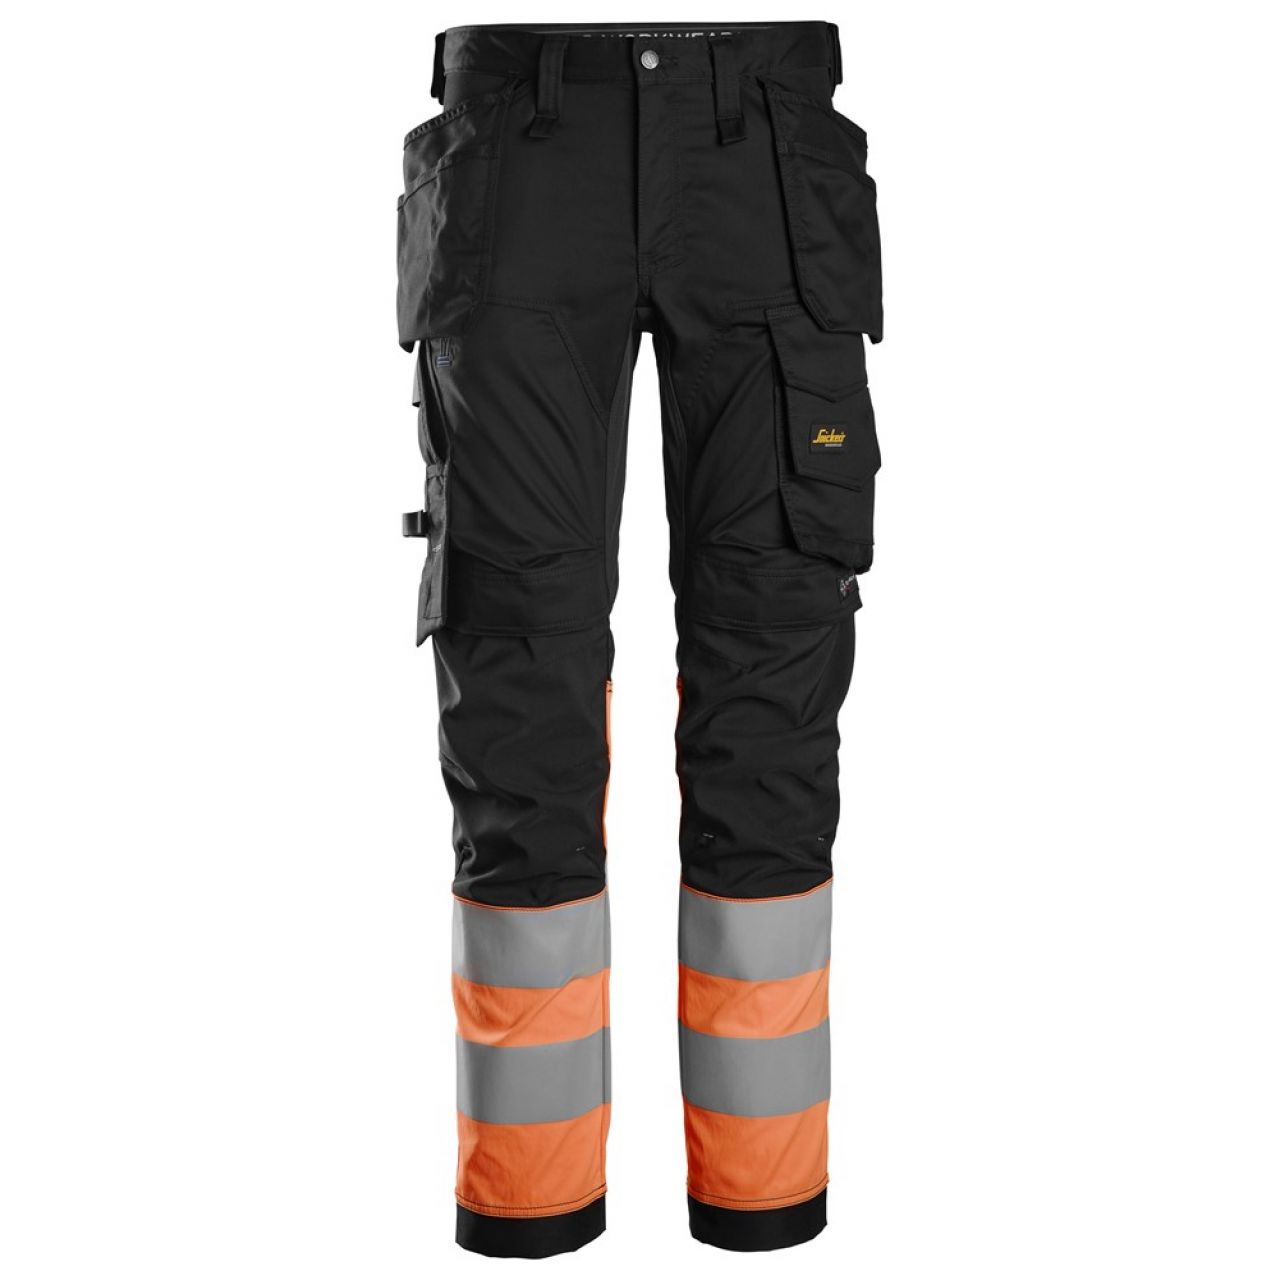 6234 Pantalones largos de trabajo elásticos de alta visibilidad clase 1 con bolsillos flotantes negro-naranja talla 256